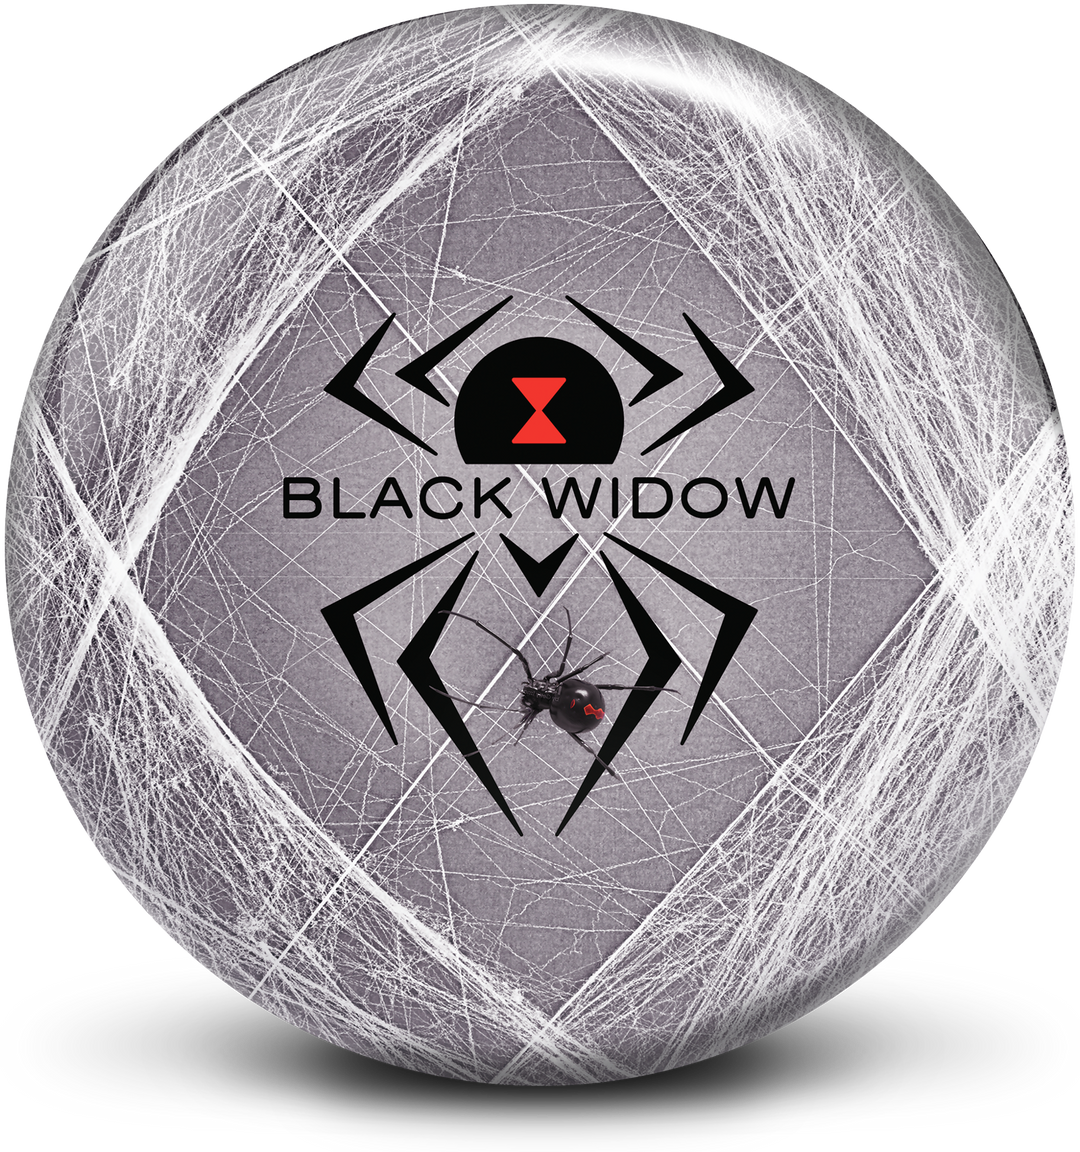 Black Widow Viz-A-Ball bowling ball front